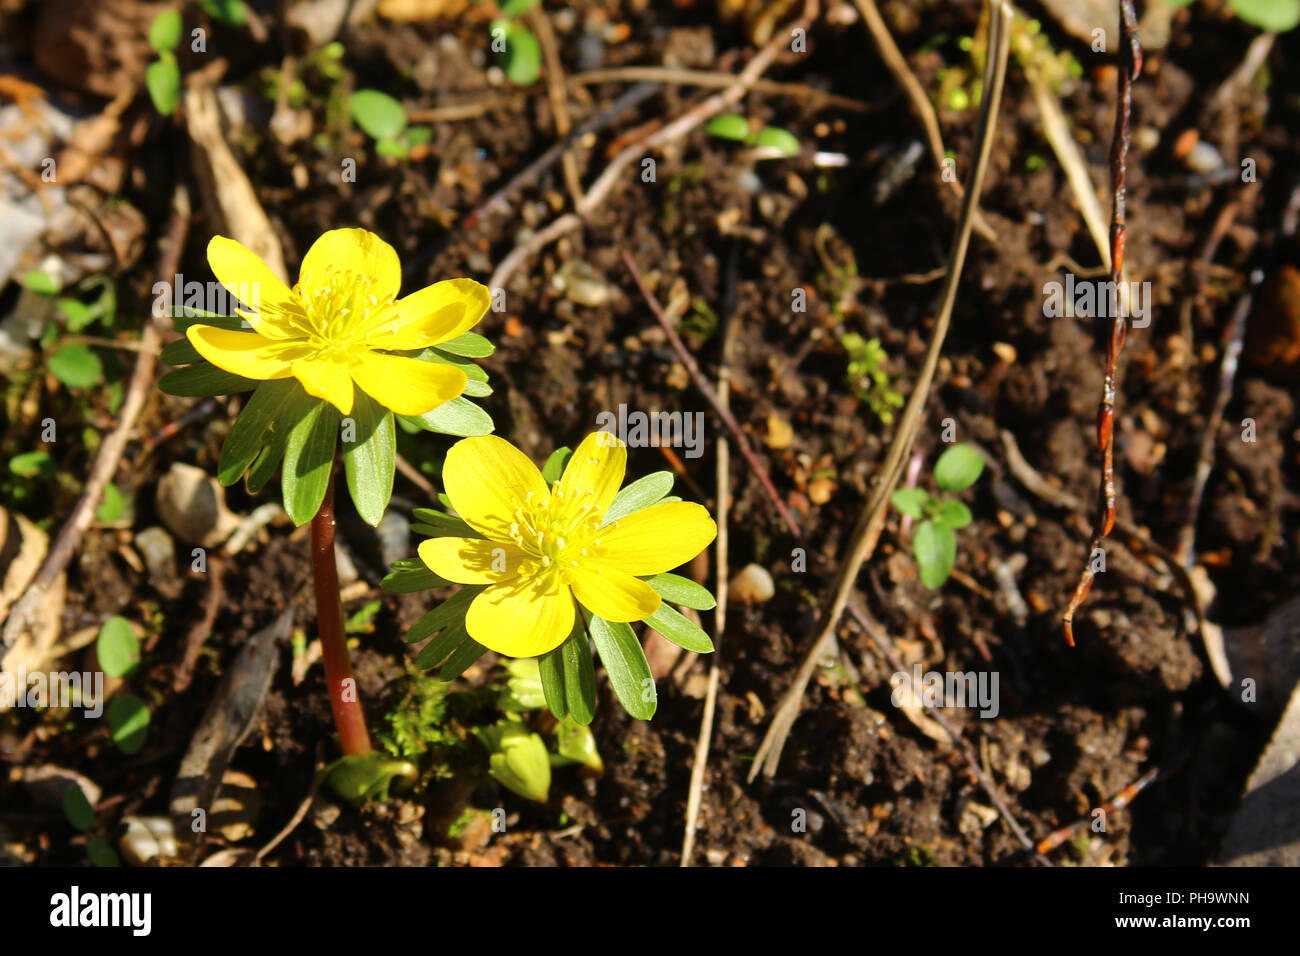 Winter aconite (Eranthis hyemalis) Stock Photo